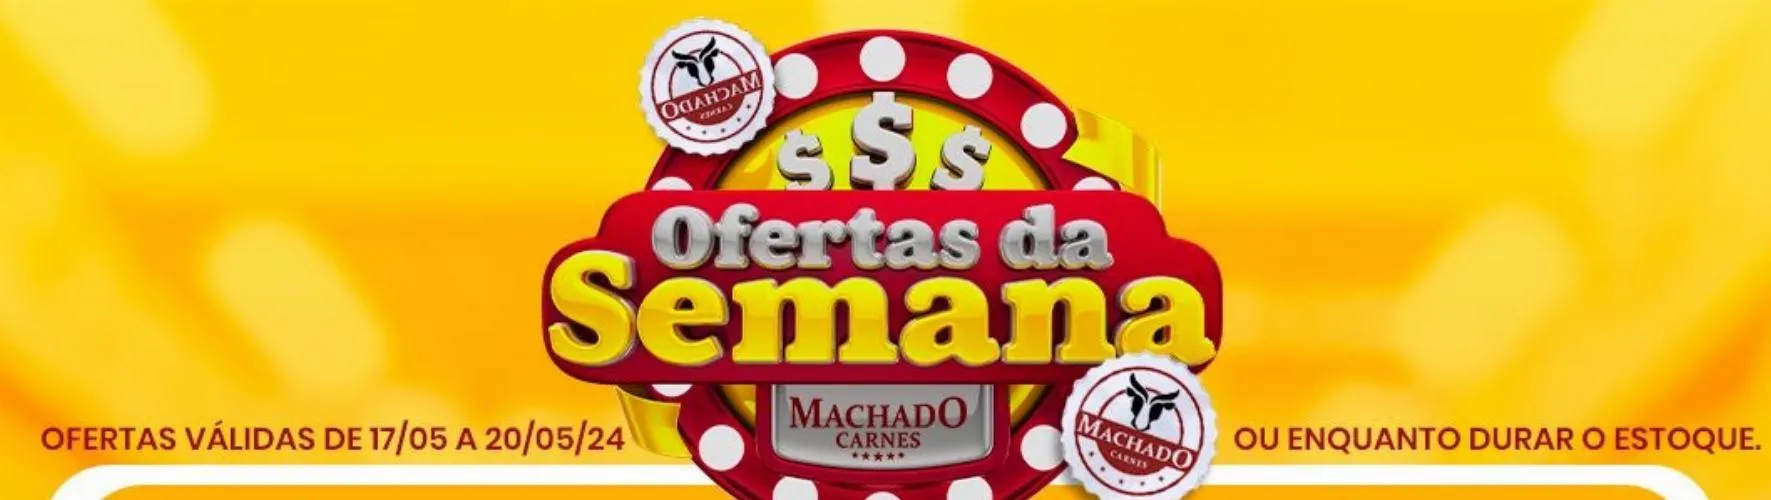 Confira a seleção de ofertas da Machado Carnes